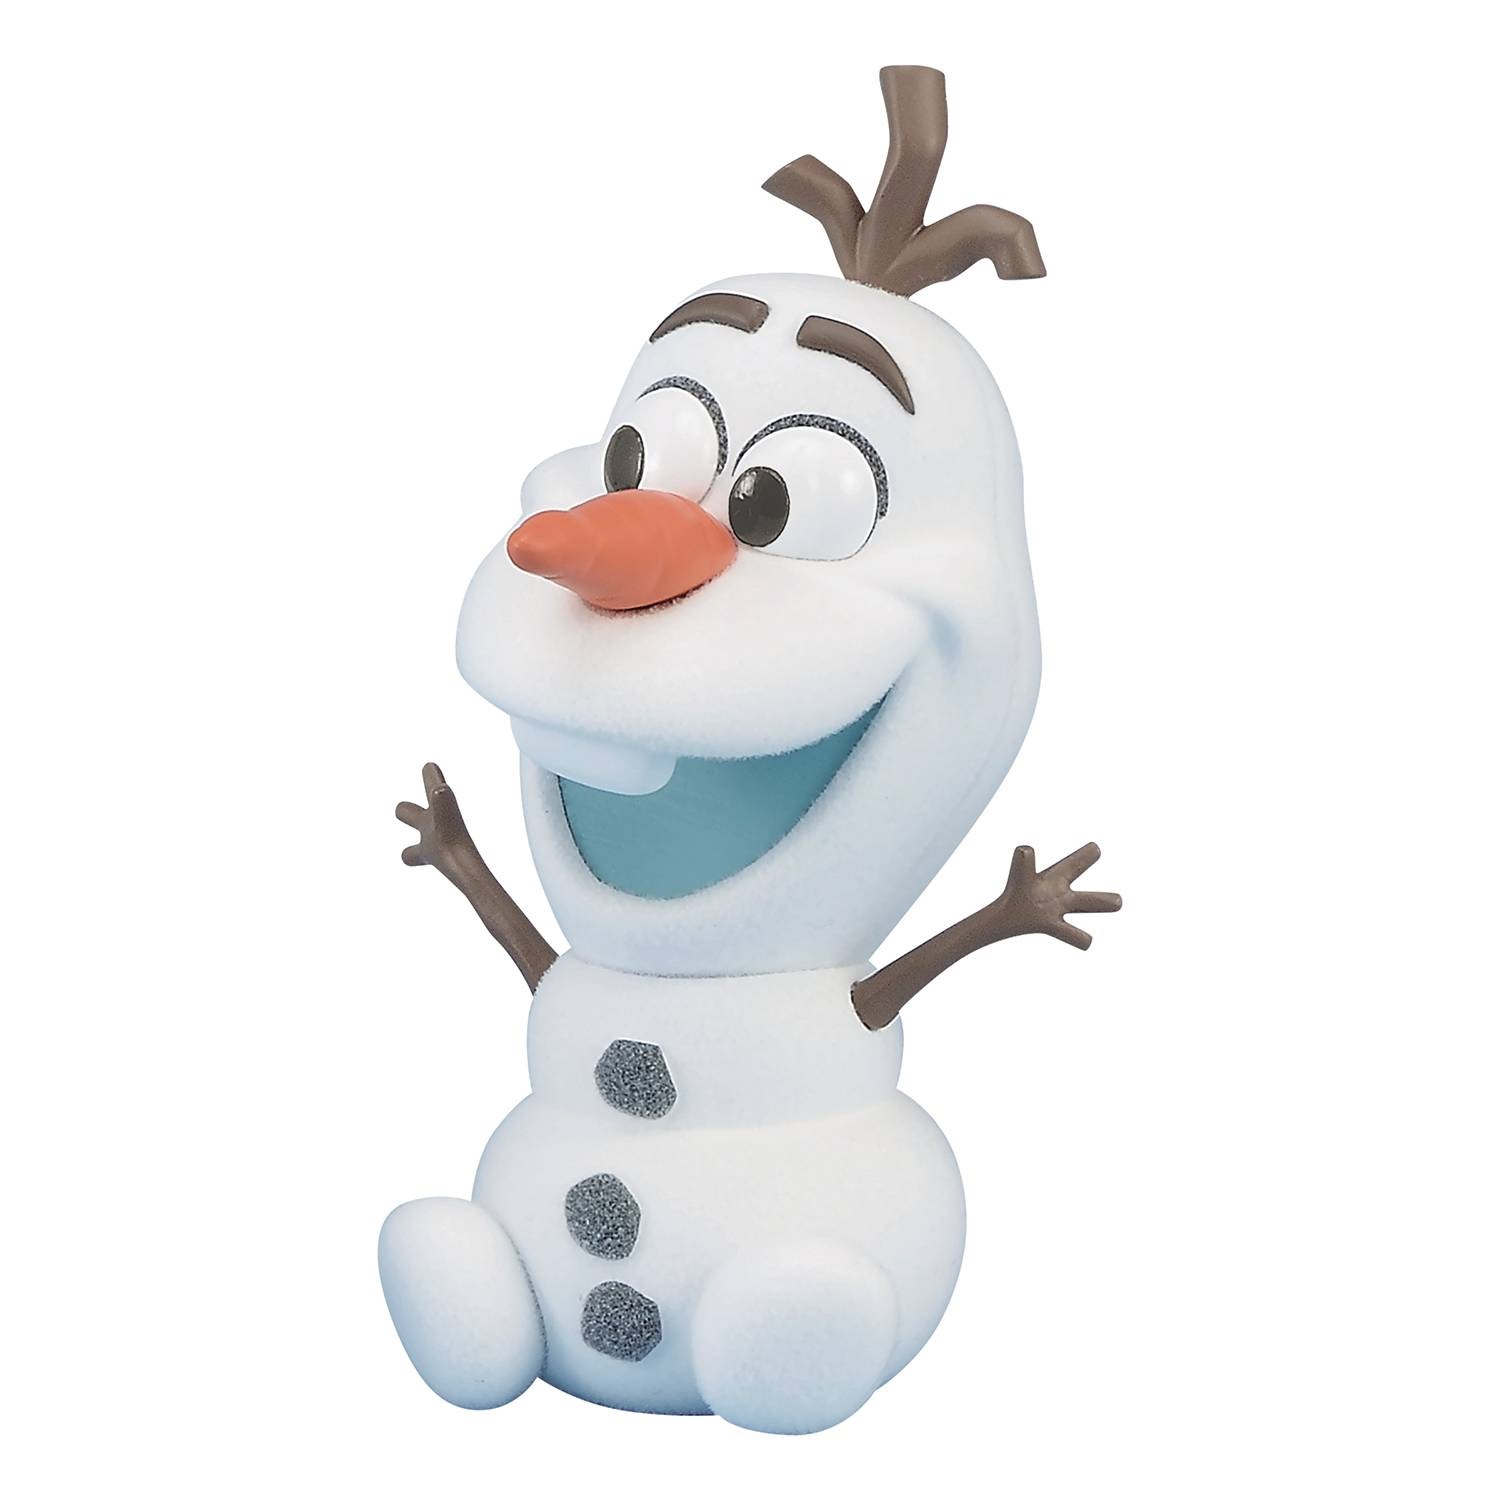 Banpresto Disney Frozen Olaf Fluffy Puffy Figure